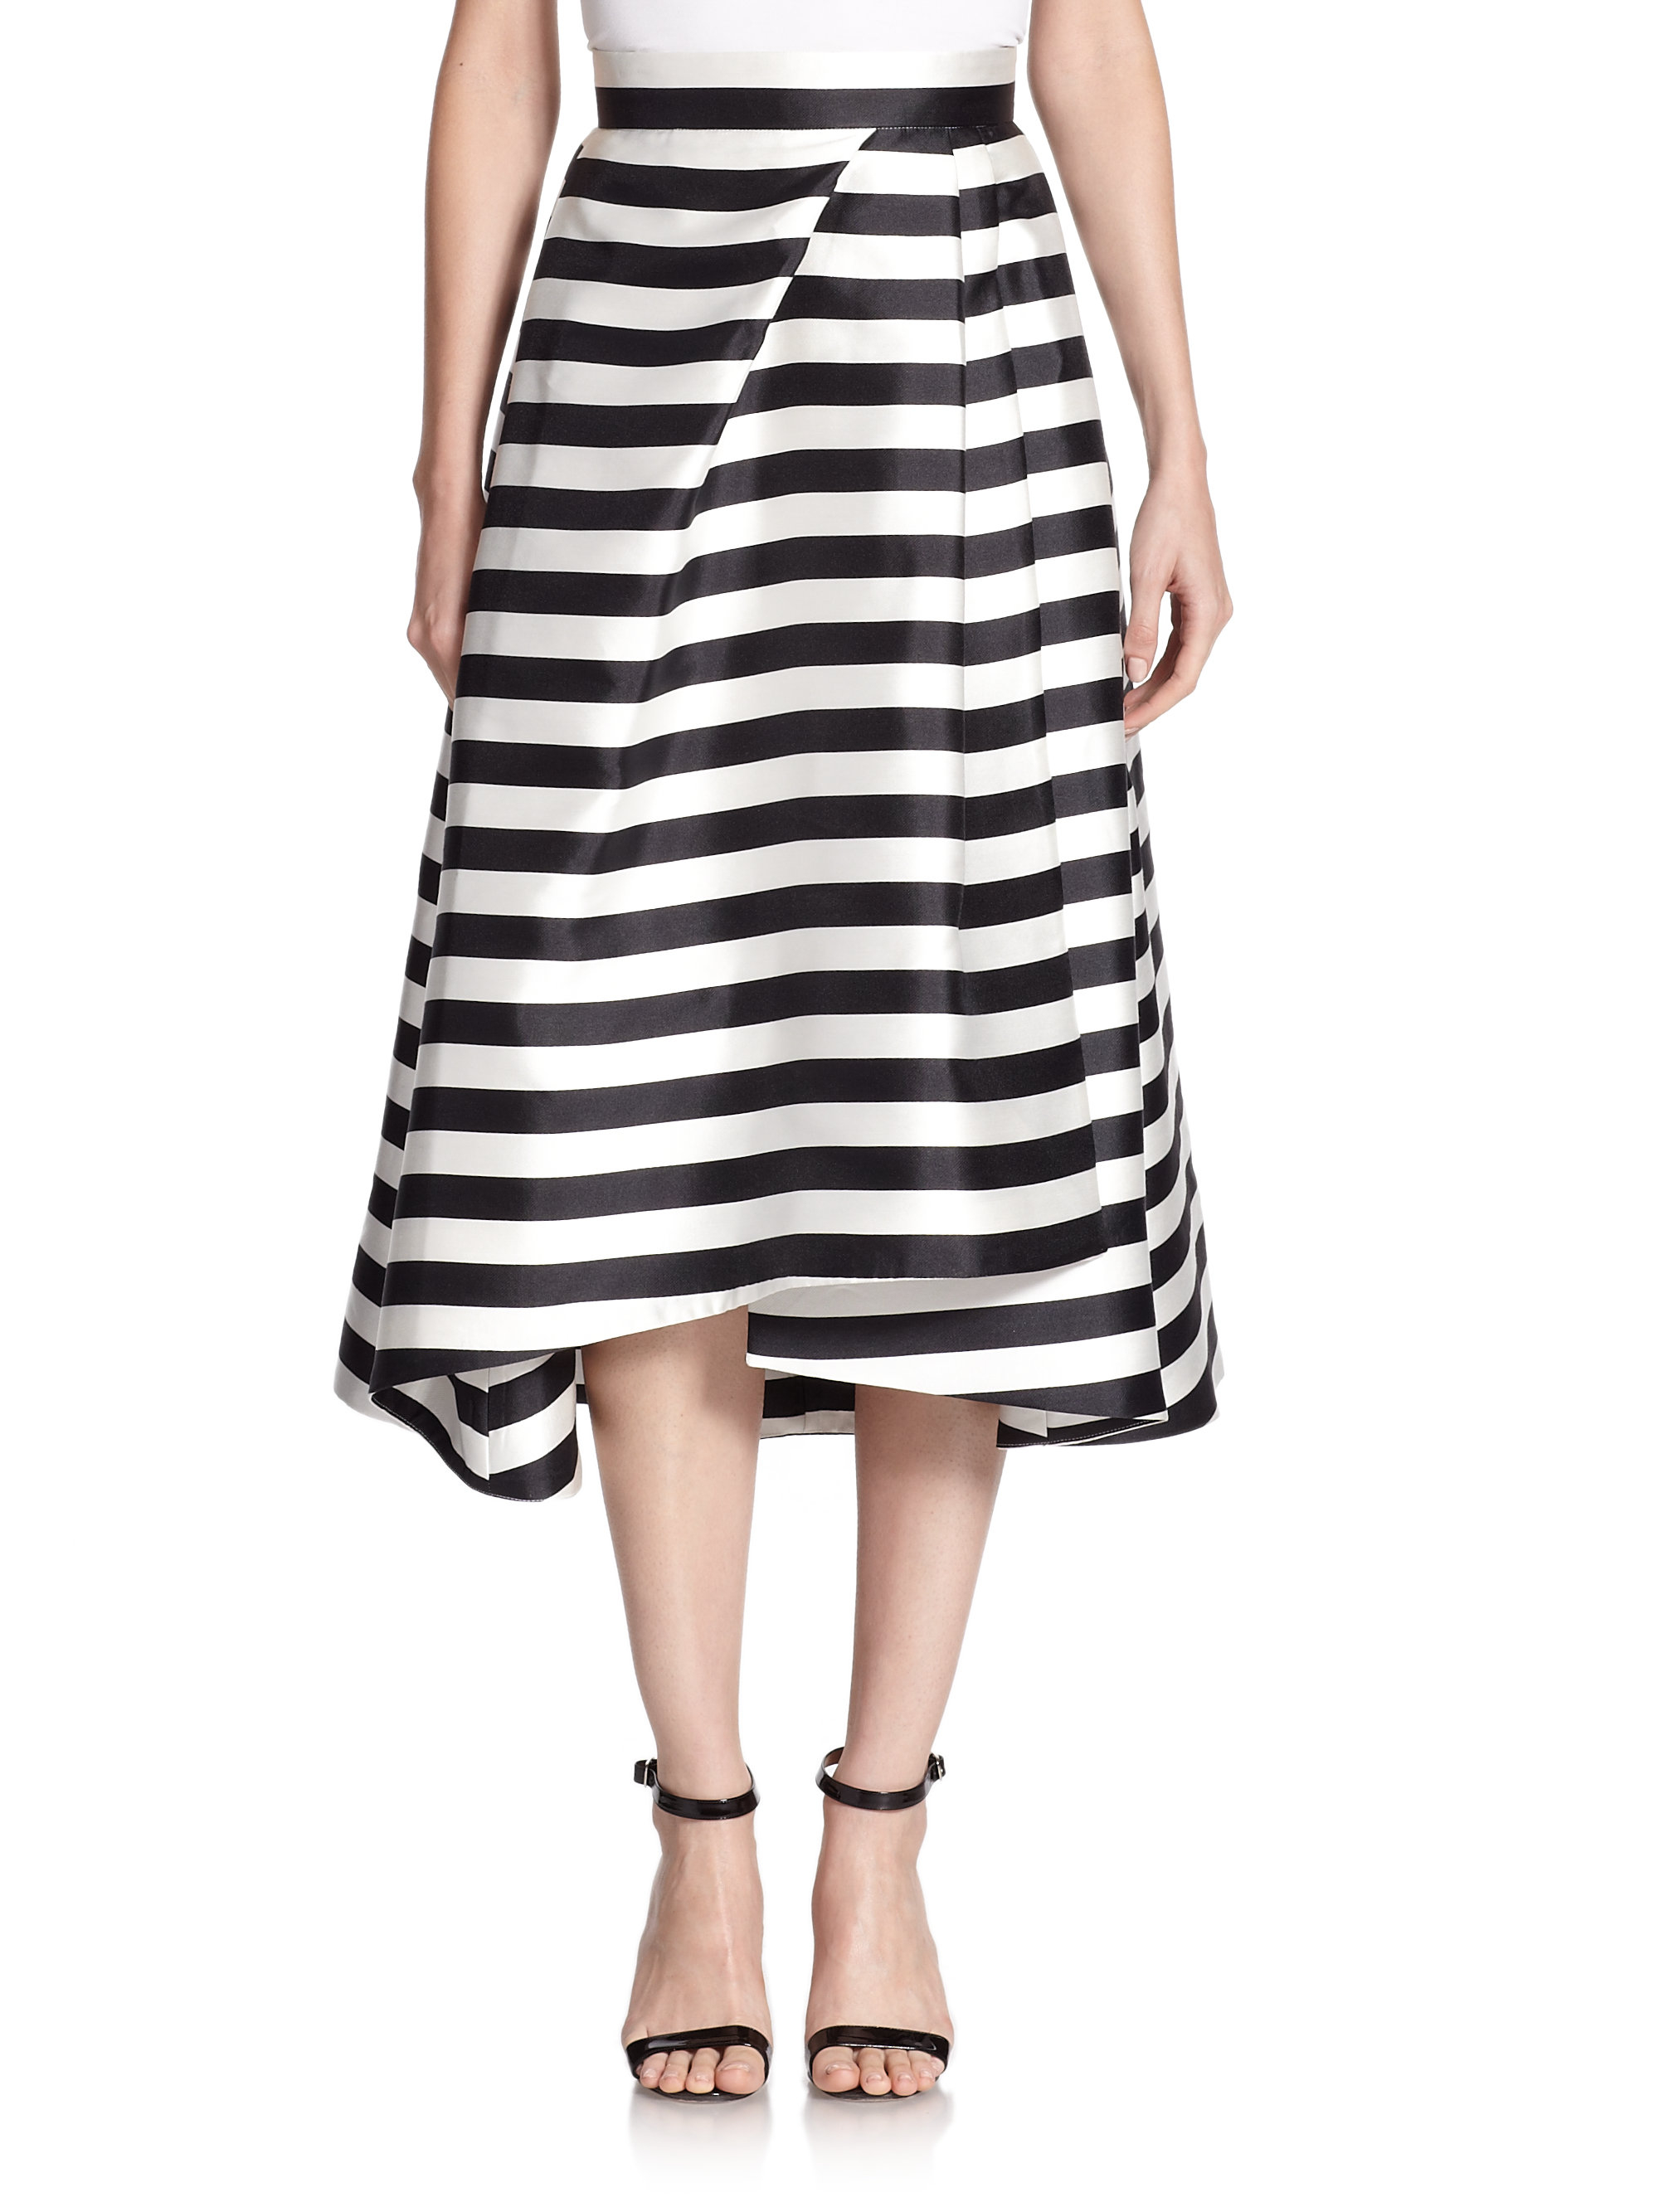 Black White Striped Skirt 66